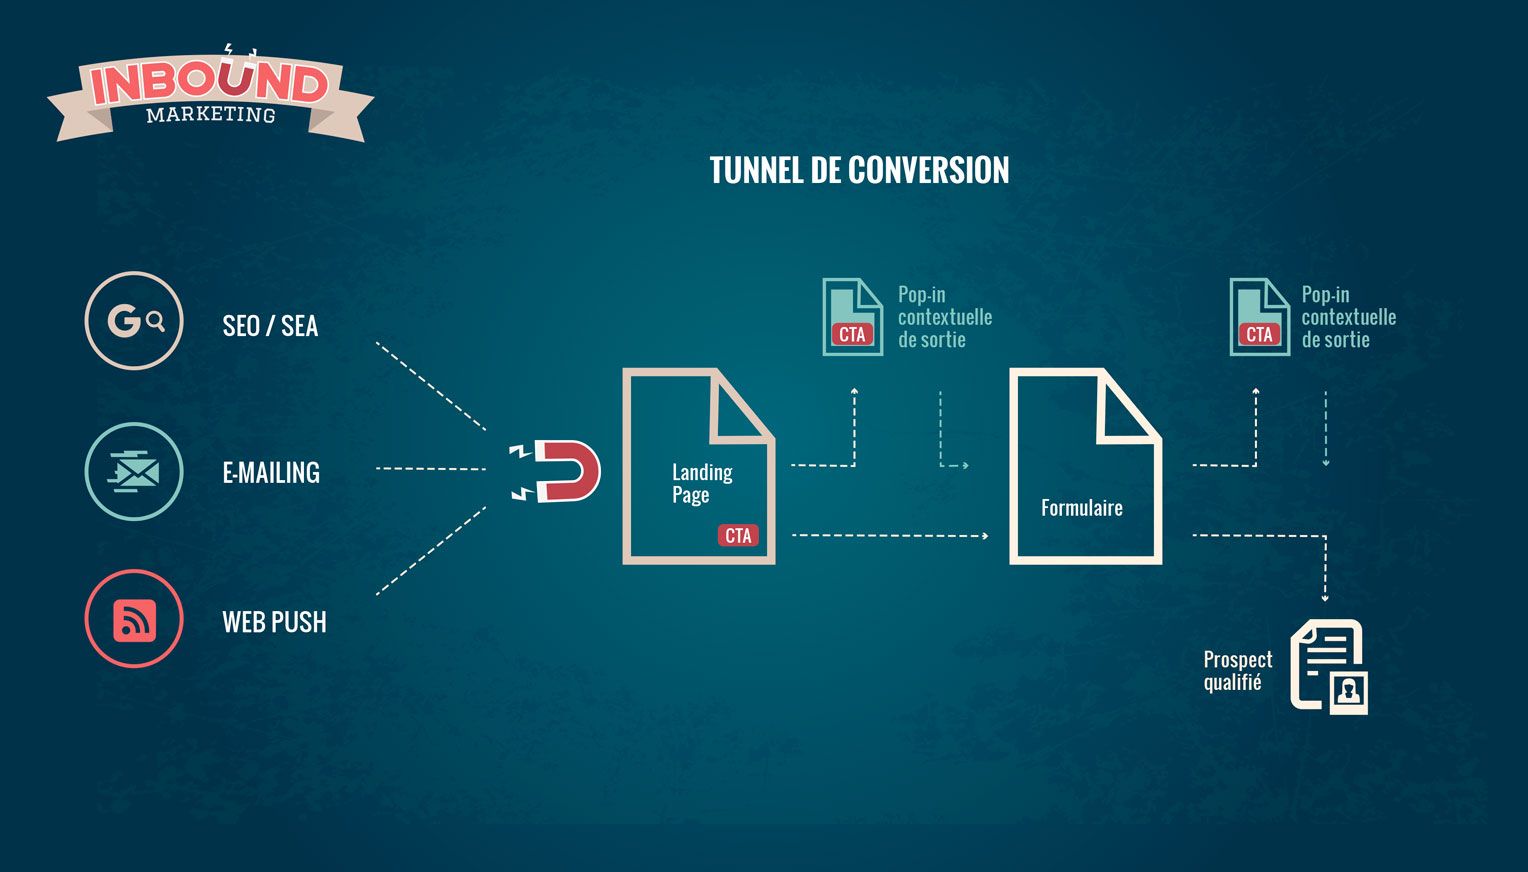 Inbound Marketing tunnel de conversion